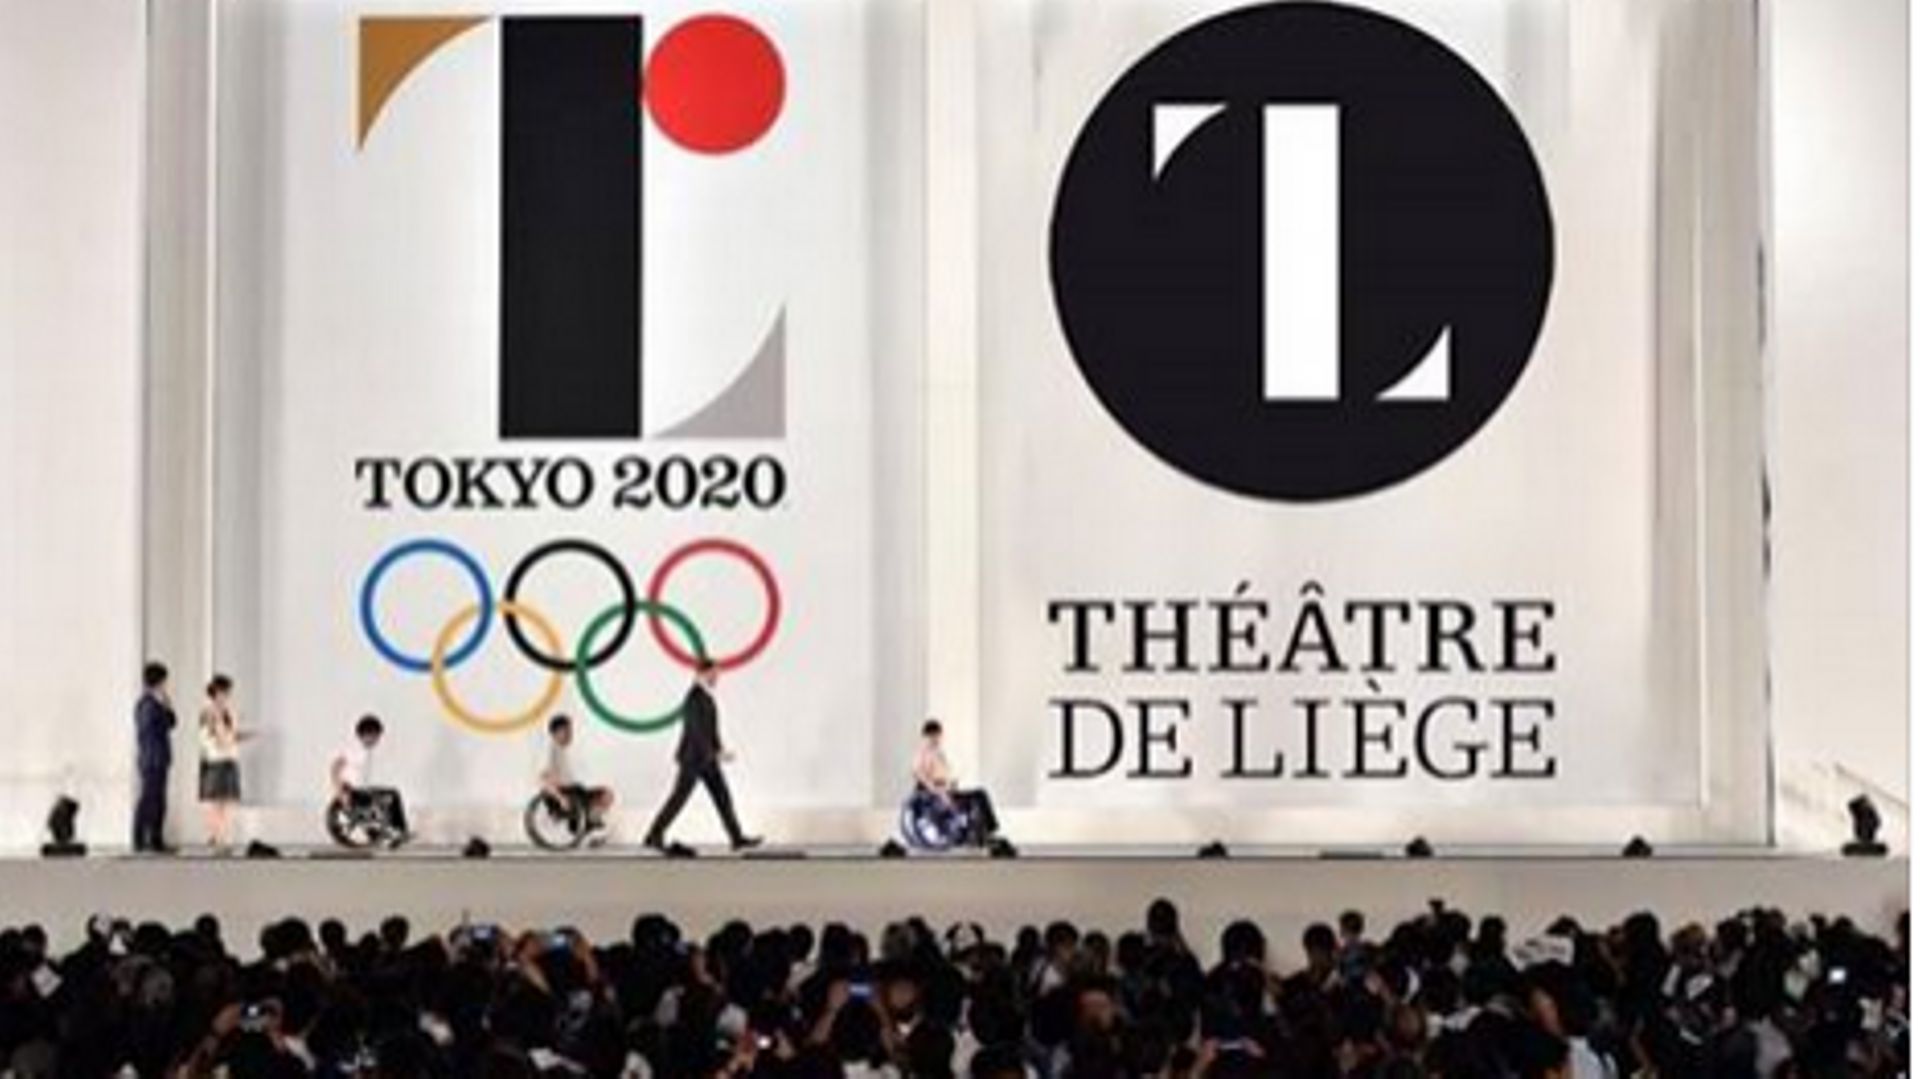 Le logo du théâtre de Liège plagié par les Jeux olympiques ? Photo montage